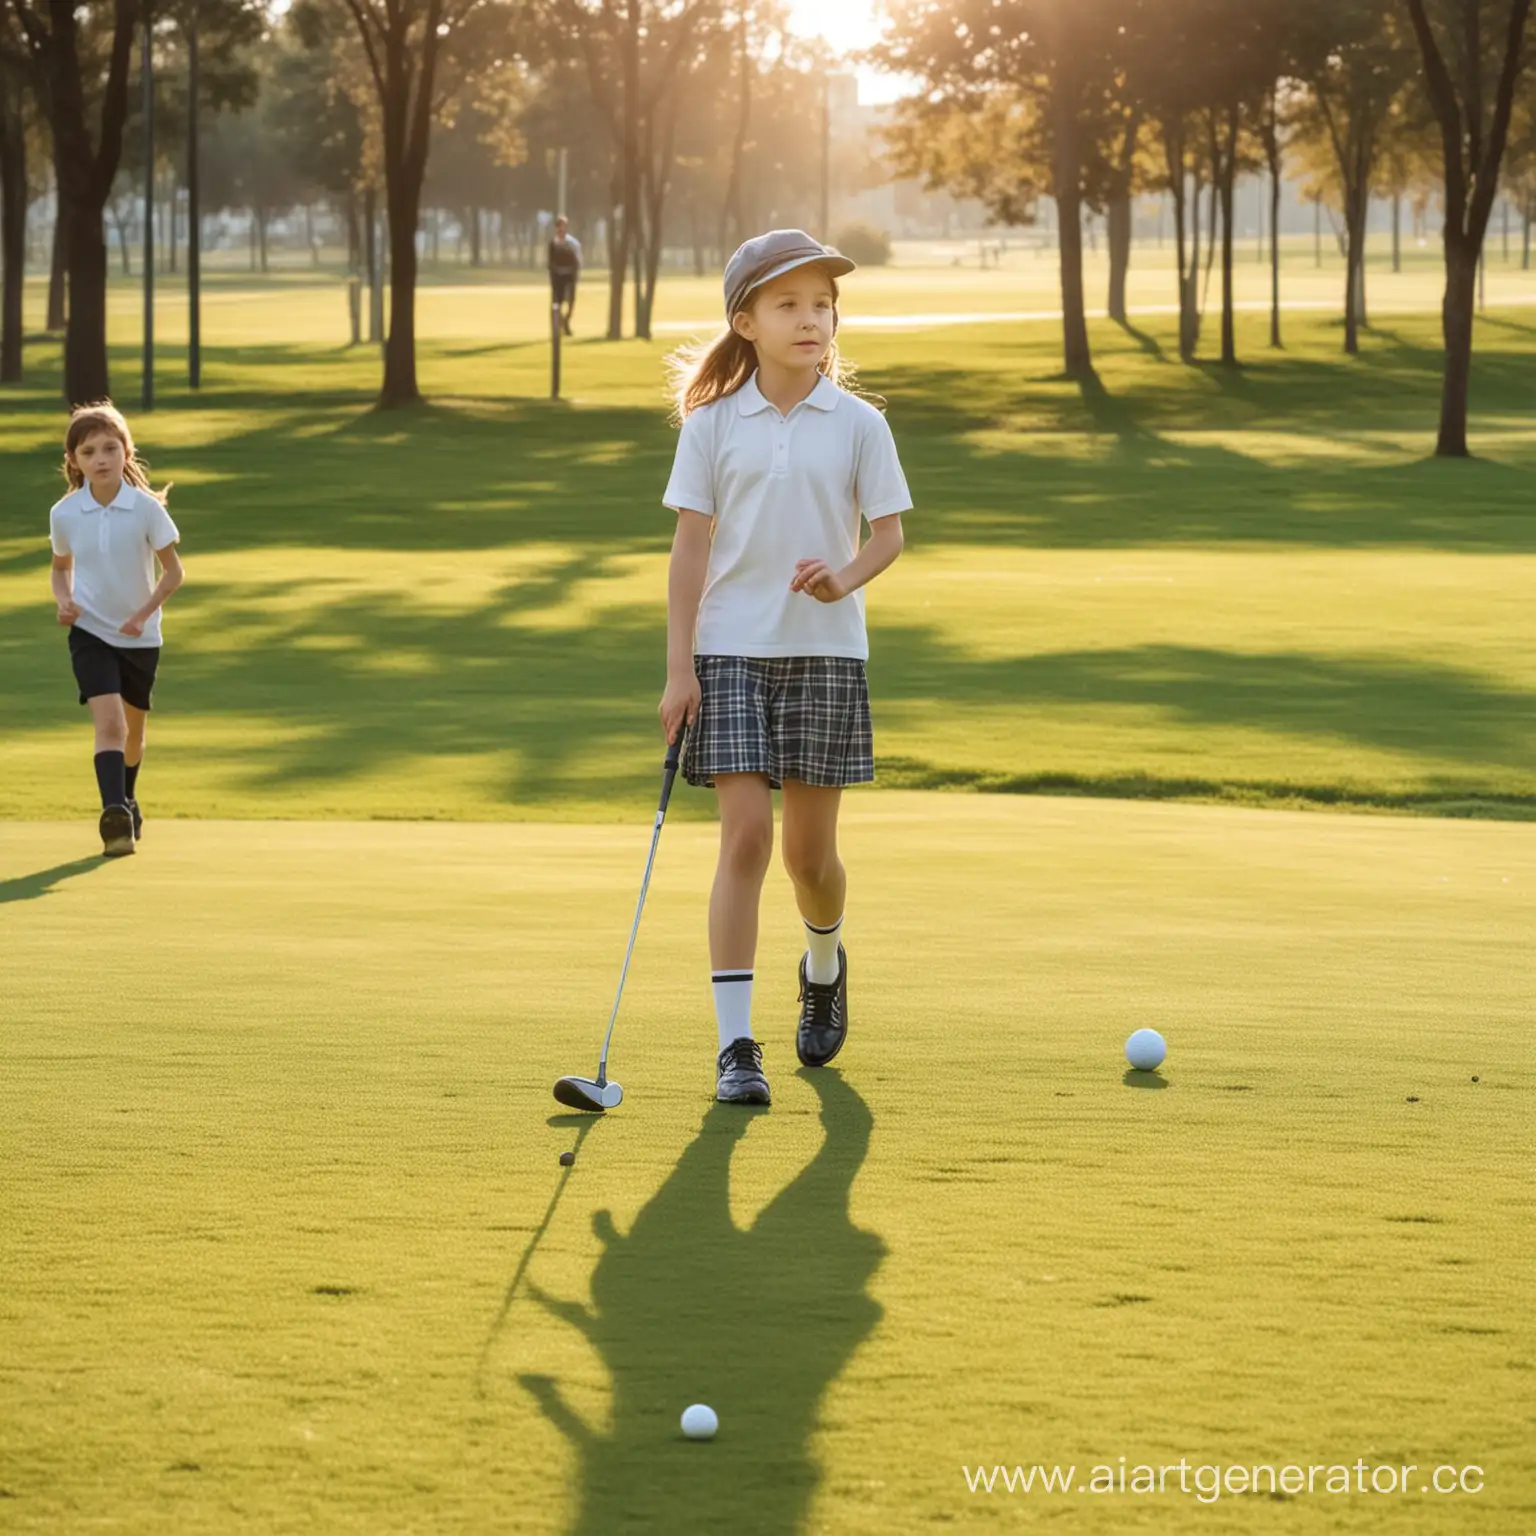 школьники играют в гольф на поле, солнечная погода